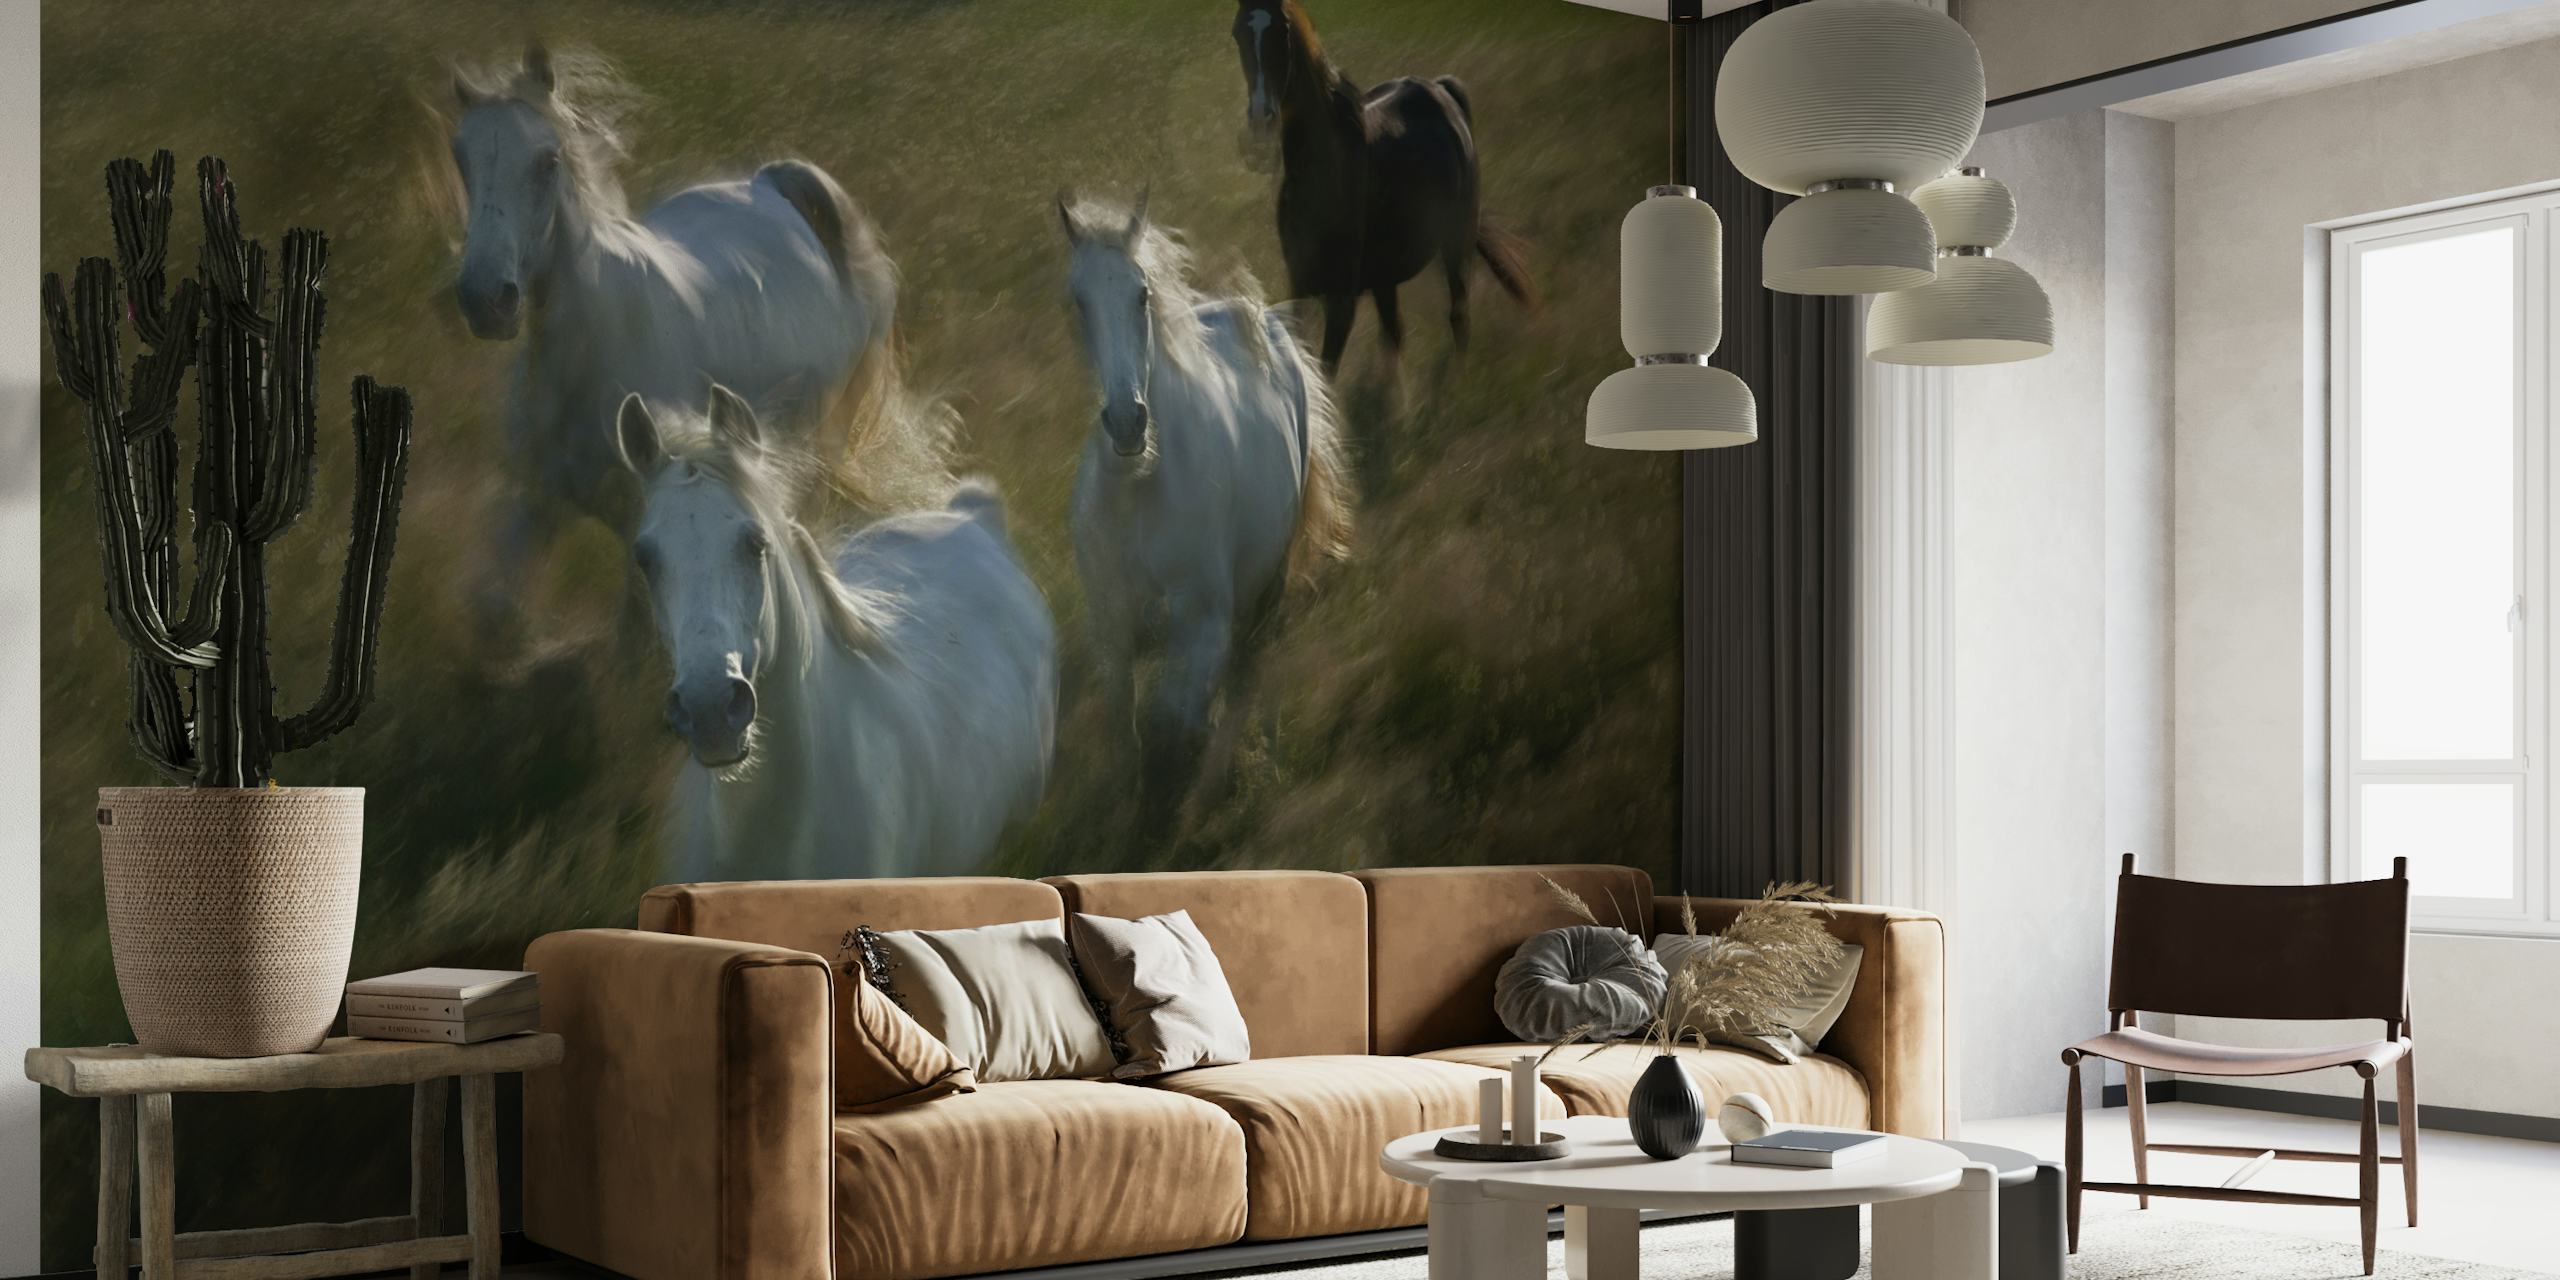 Konji trče zidni mural koji prikazuje krdo bijelih konja s tamnim konjem u pozadini koji galopira preko polja.